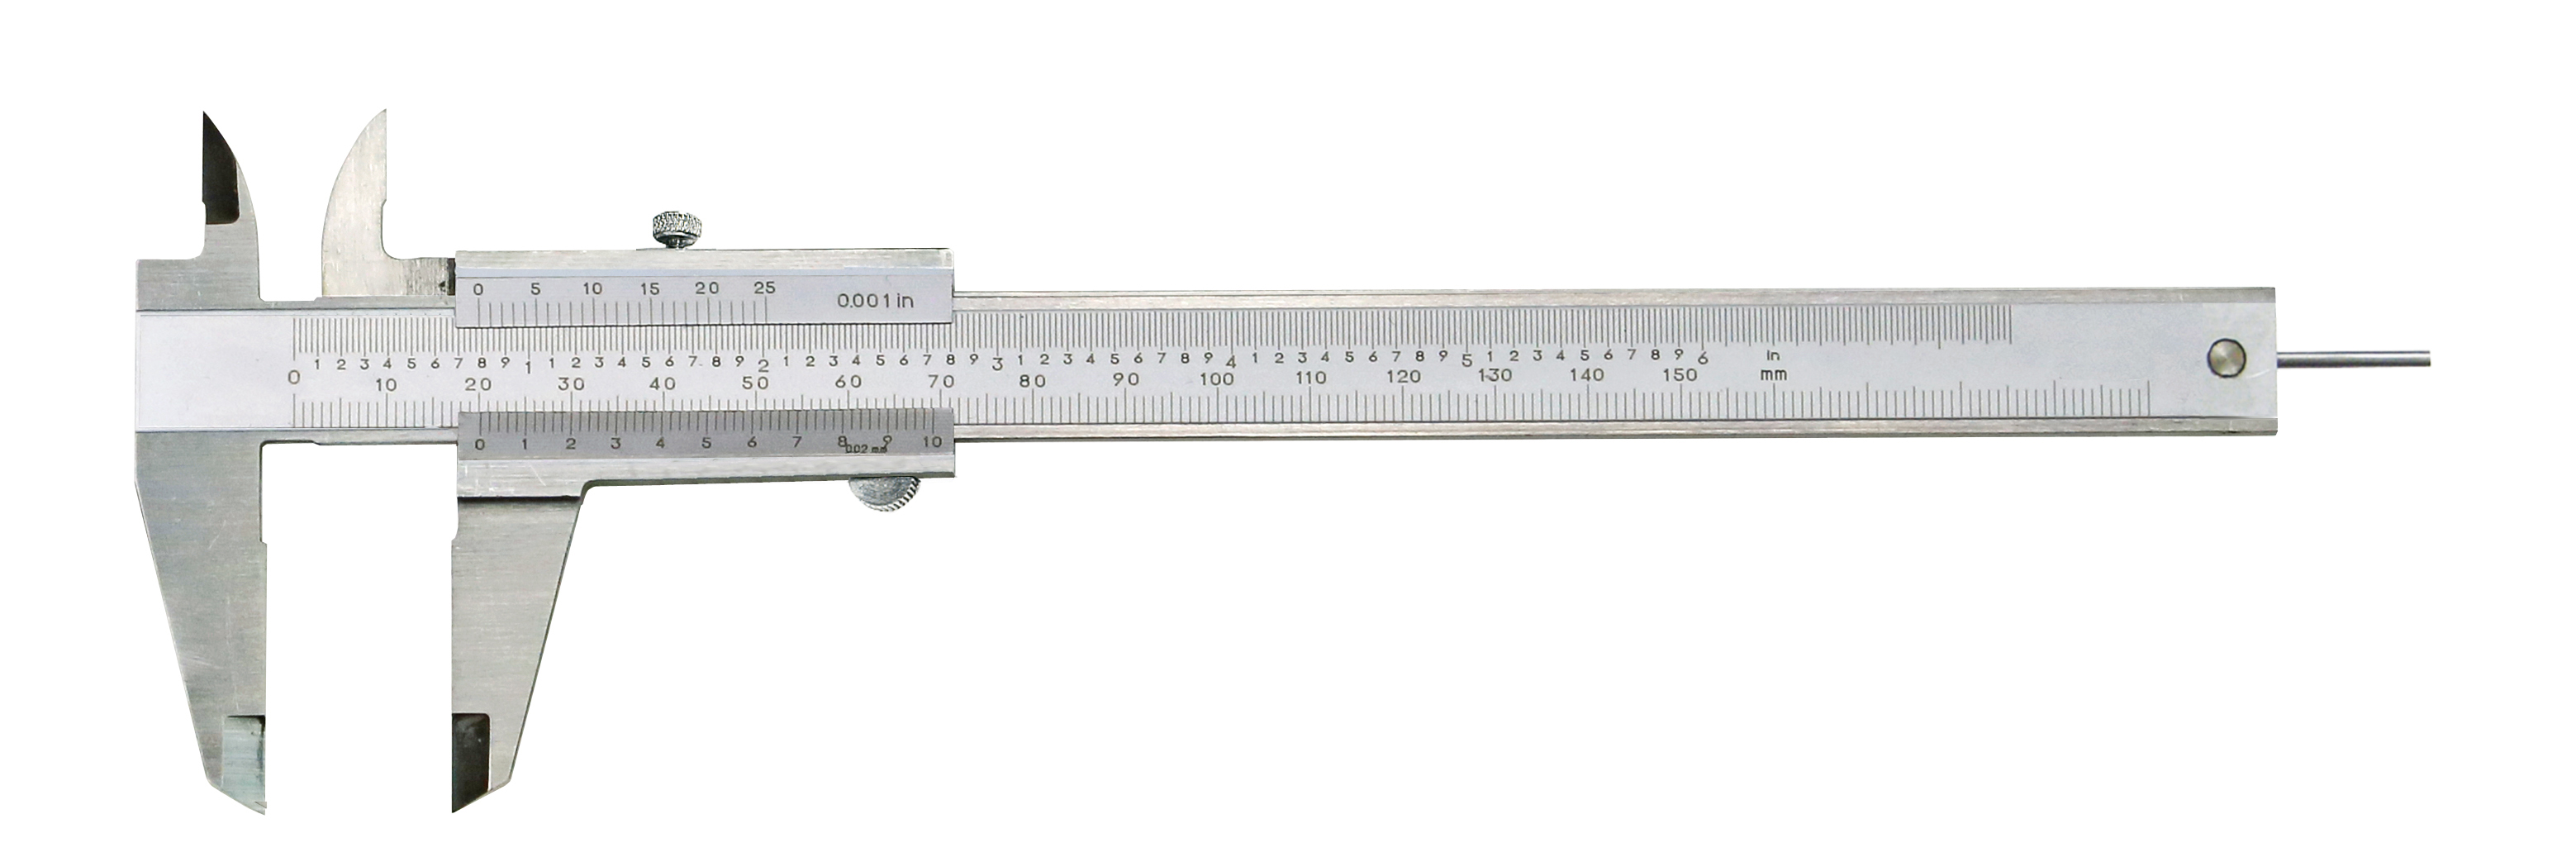 Messschieber analog mit rundem Tiefenmaß Ø 2 mm